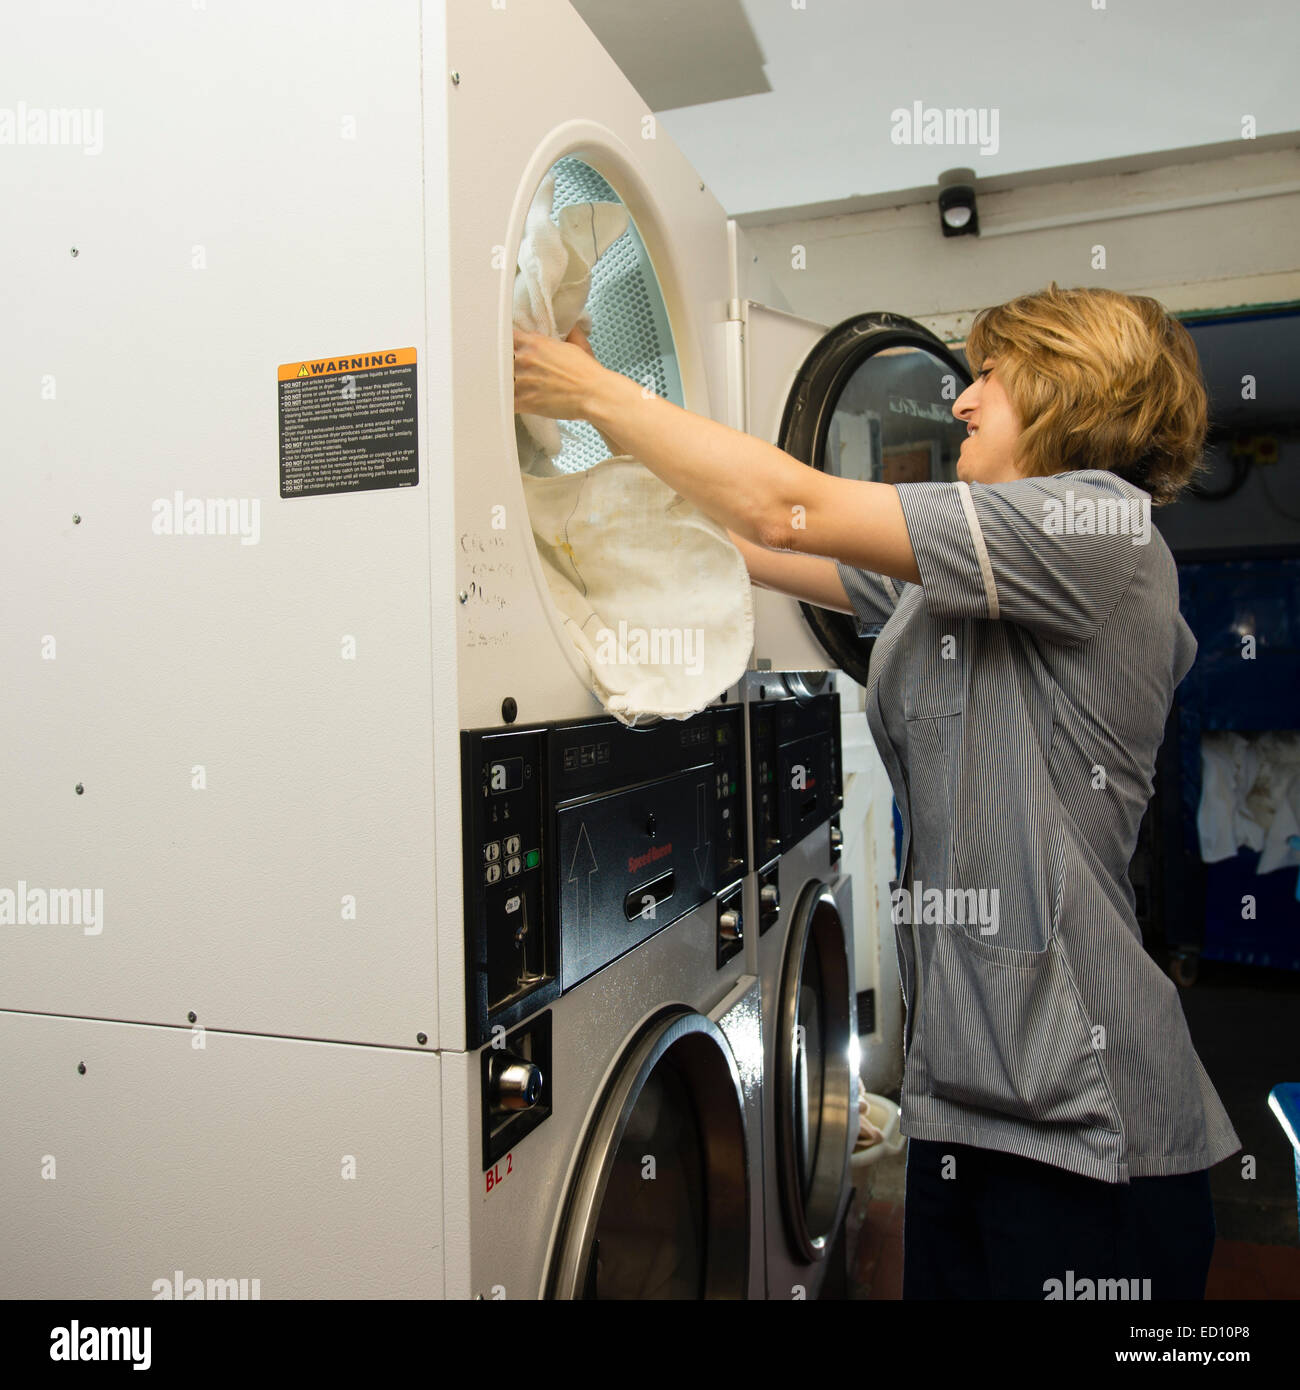 Eine Frau arbeiten laden Kleidung in industriellen Größe Wäschetrockner  Trockner in der Waschküche in einem Hotel, UK Stockfotografie - Alamy